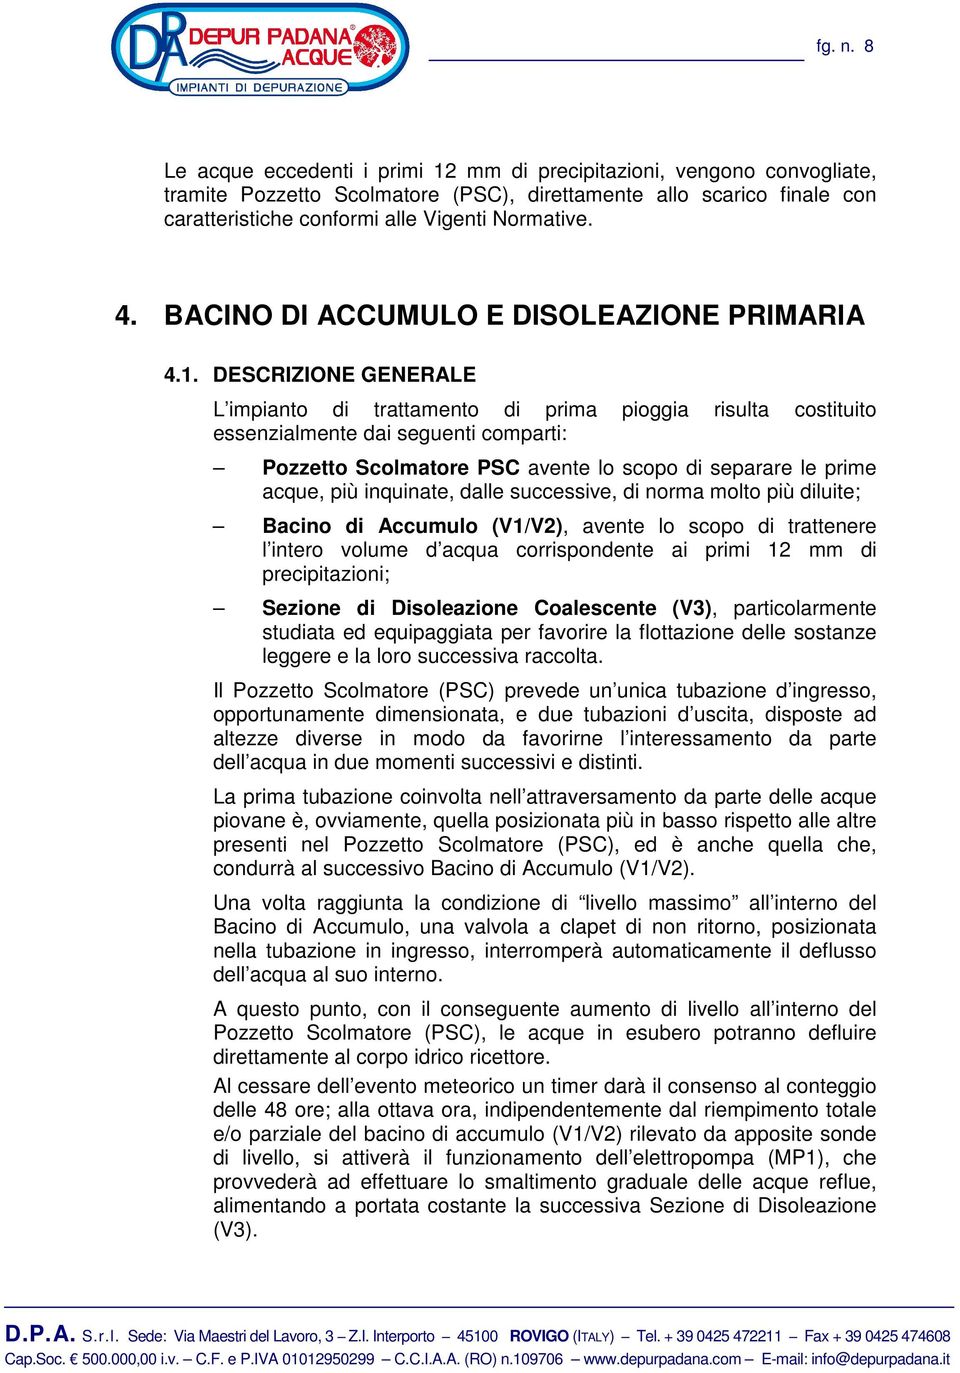 BACINO DI ACCUMULO E DISOLEAZIONE PRIMARIA 4.1.